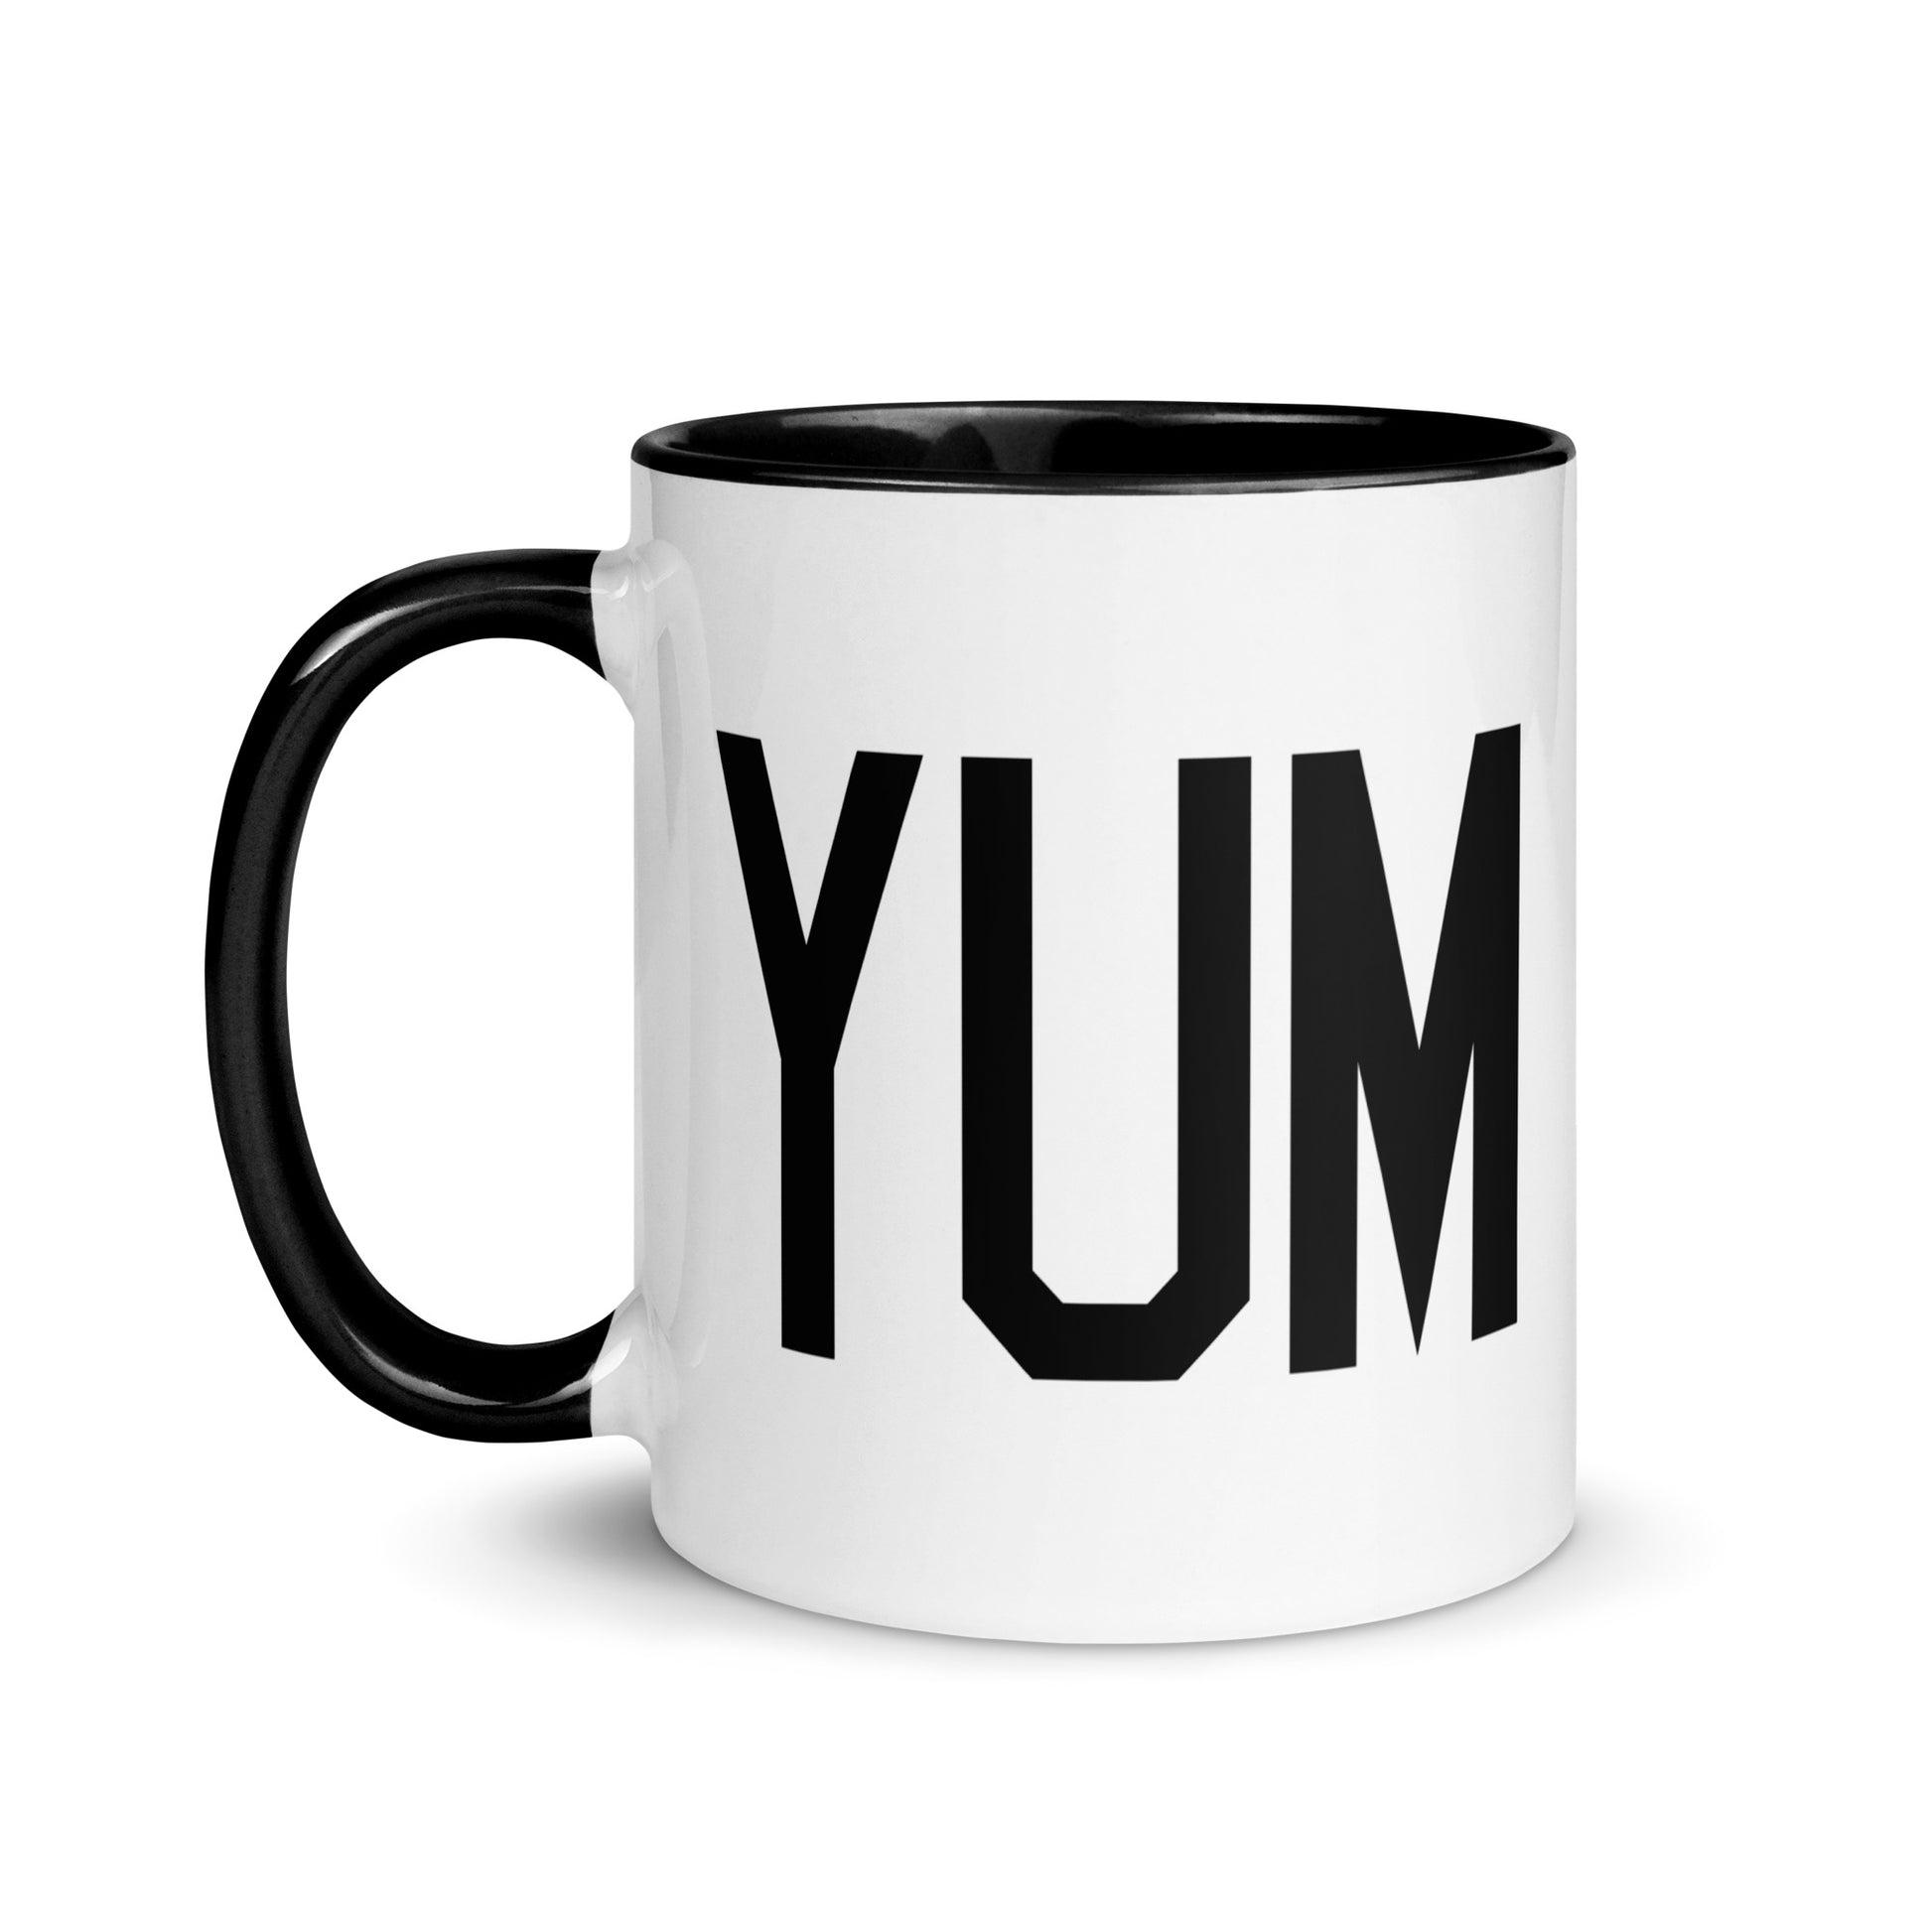 Aviation-Theme Coffee Mug - Black • YUM Yuma • YHM Designs - Image 03